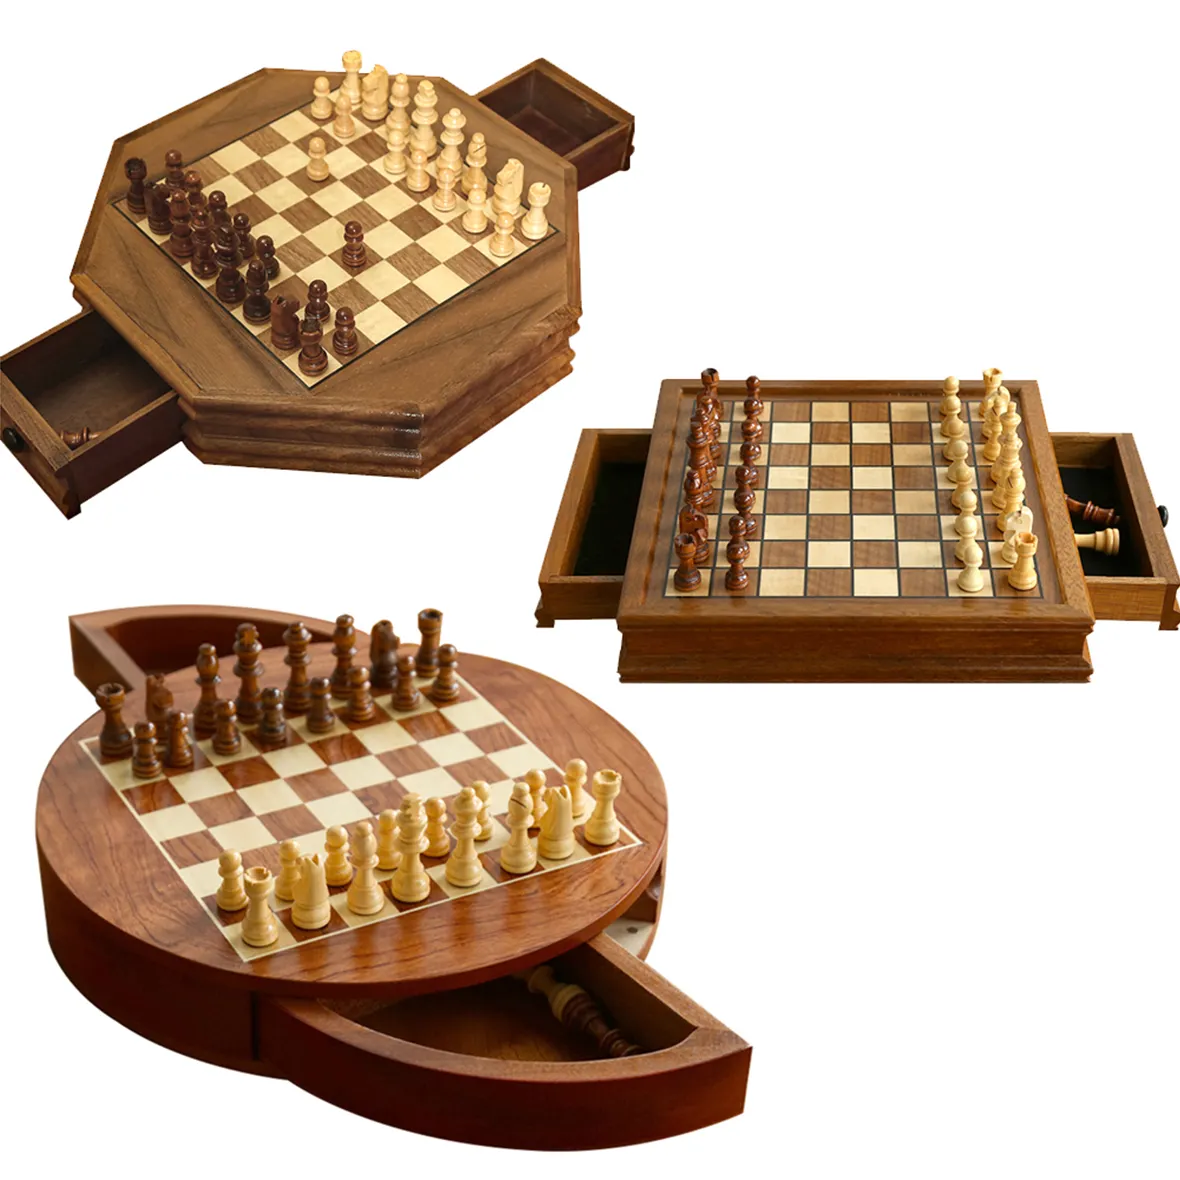 25 년 공장 도매 12.8 "x 12.8" 마그네틱 나무 체스 세트 2 내장 서랍 2 추가 여왕 Staunton 체스